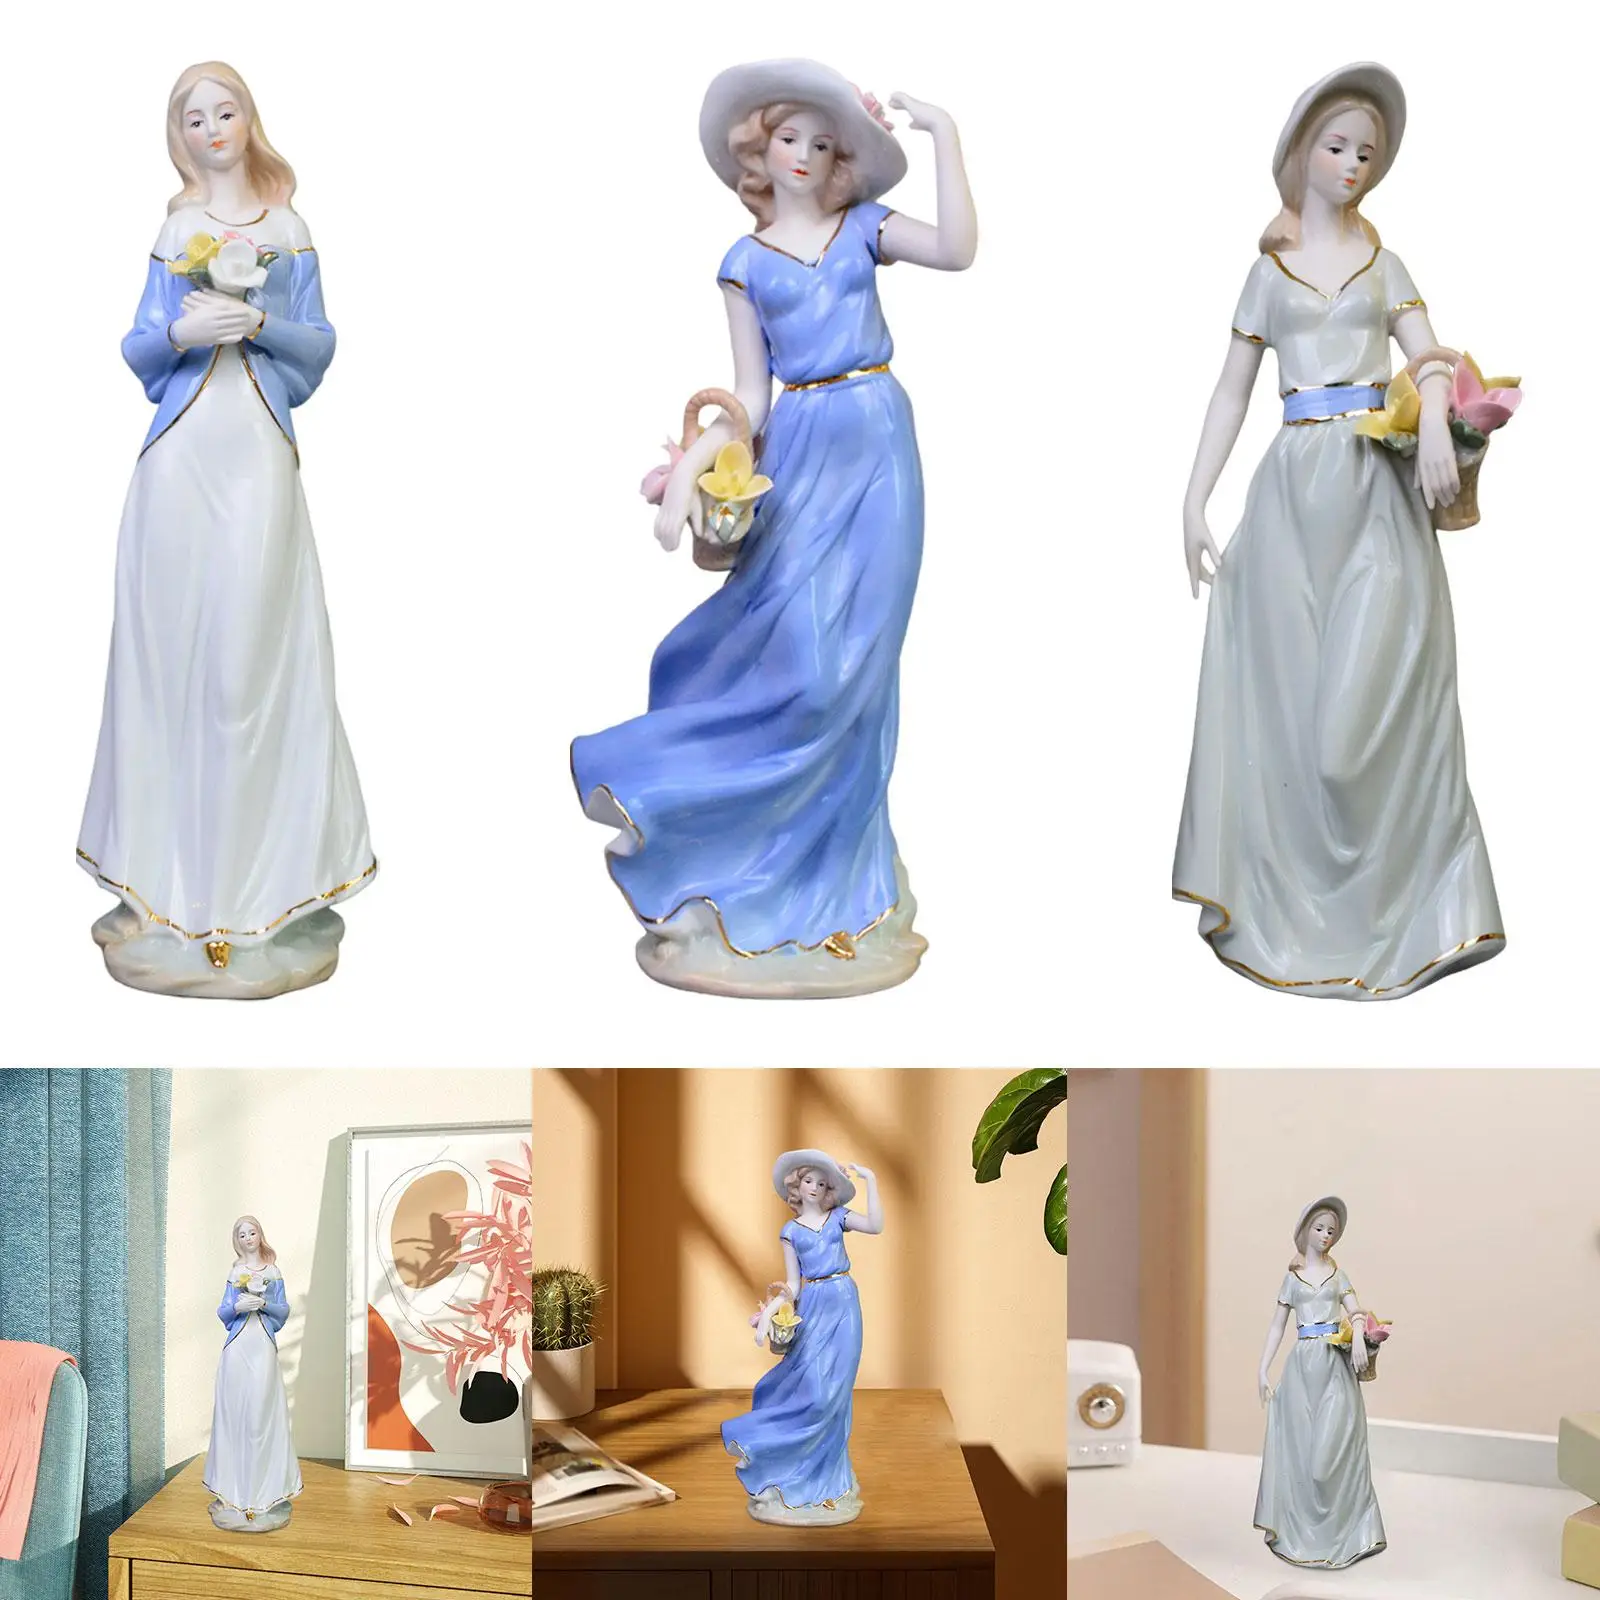 Figura de porcelana de chica, bonita figura de Arte Moderno, estatuilla decorativa de porcelana, decoración del hogar para oficina, librería de mesa